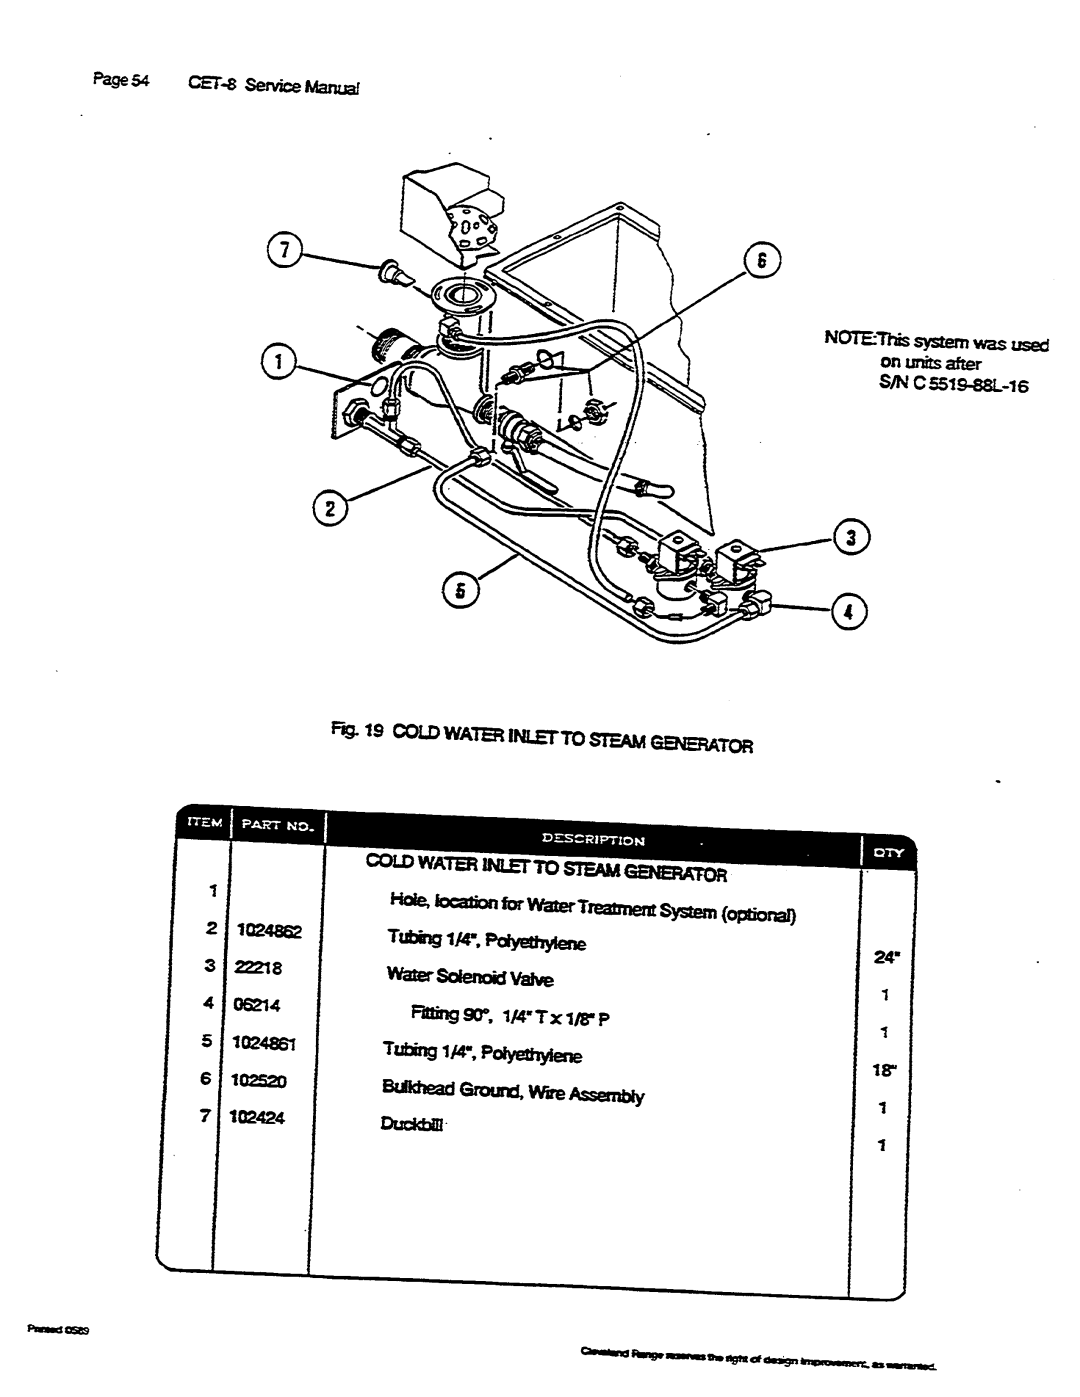 Cleveland Range CET-8 manual 